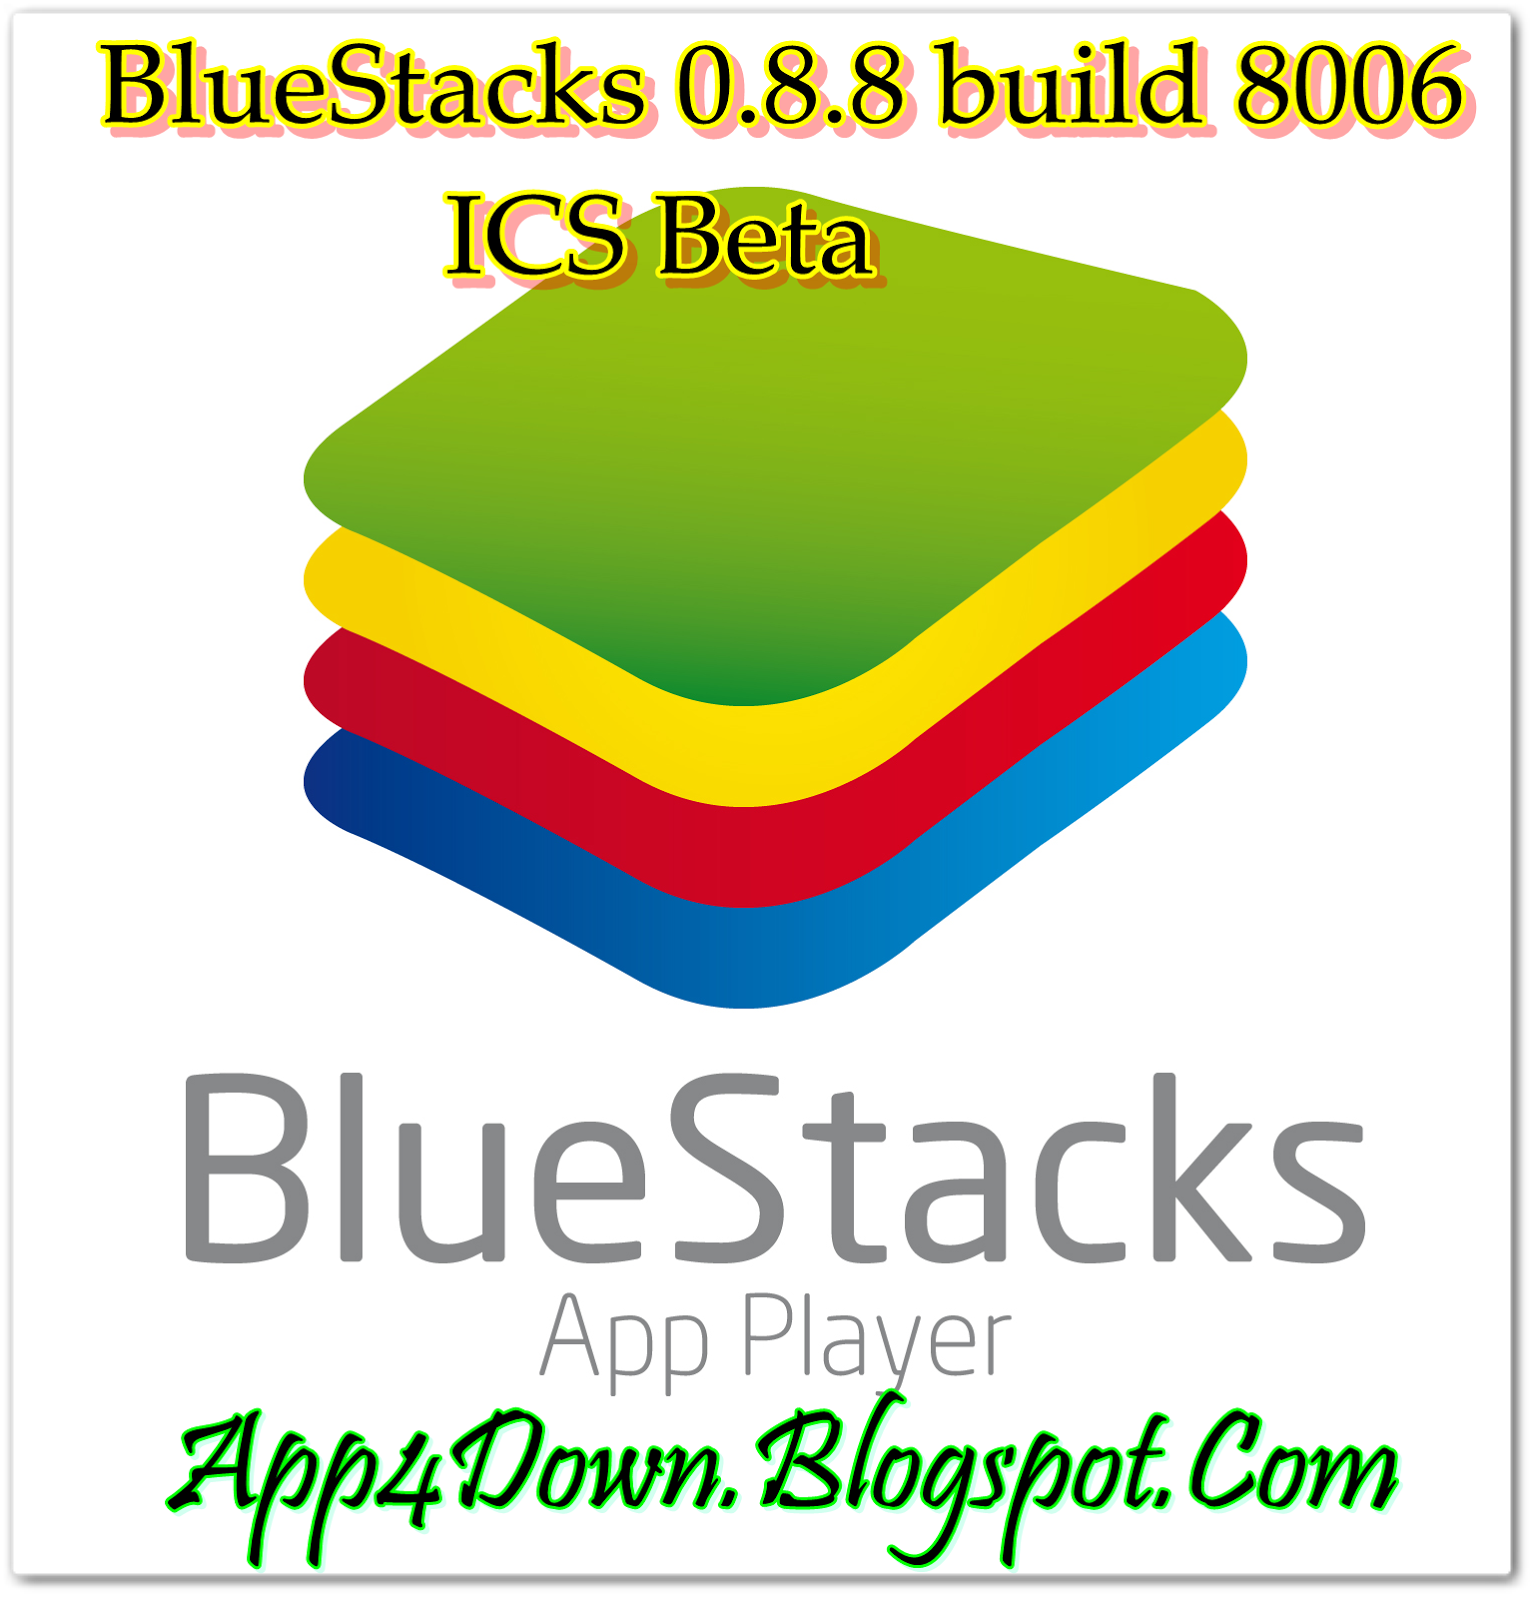 bluestacks offline installer windows 8